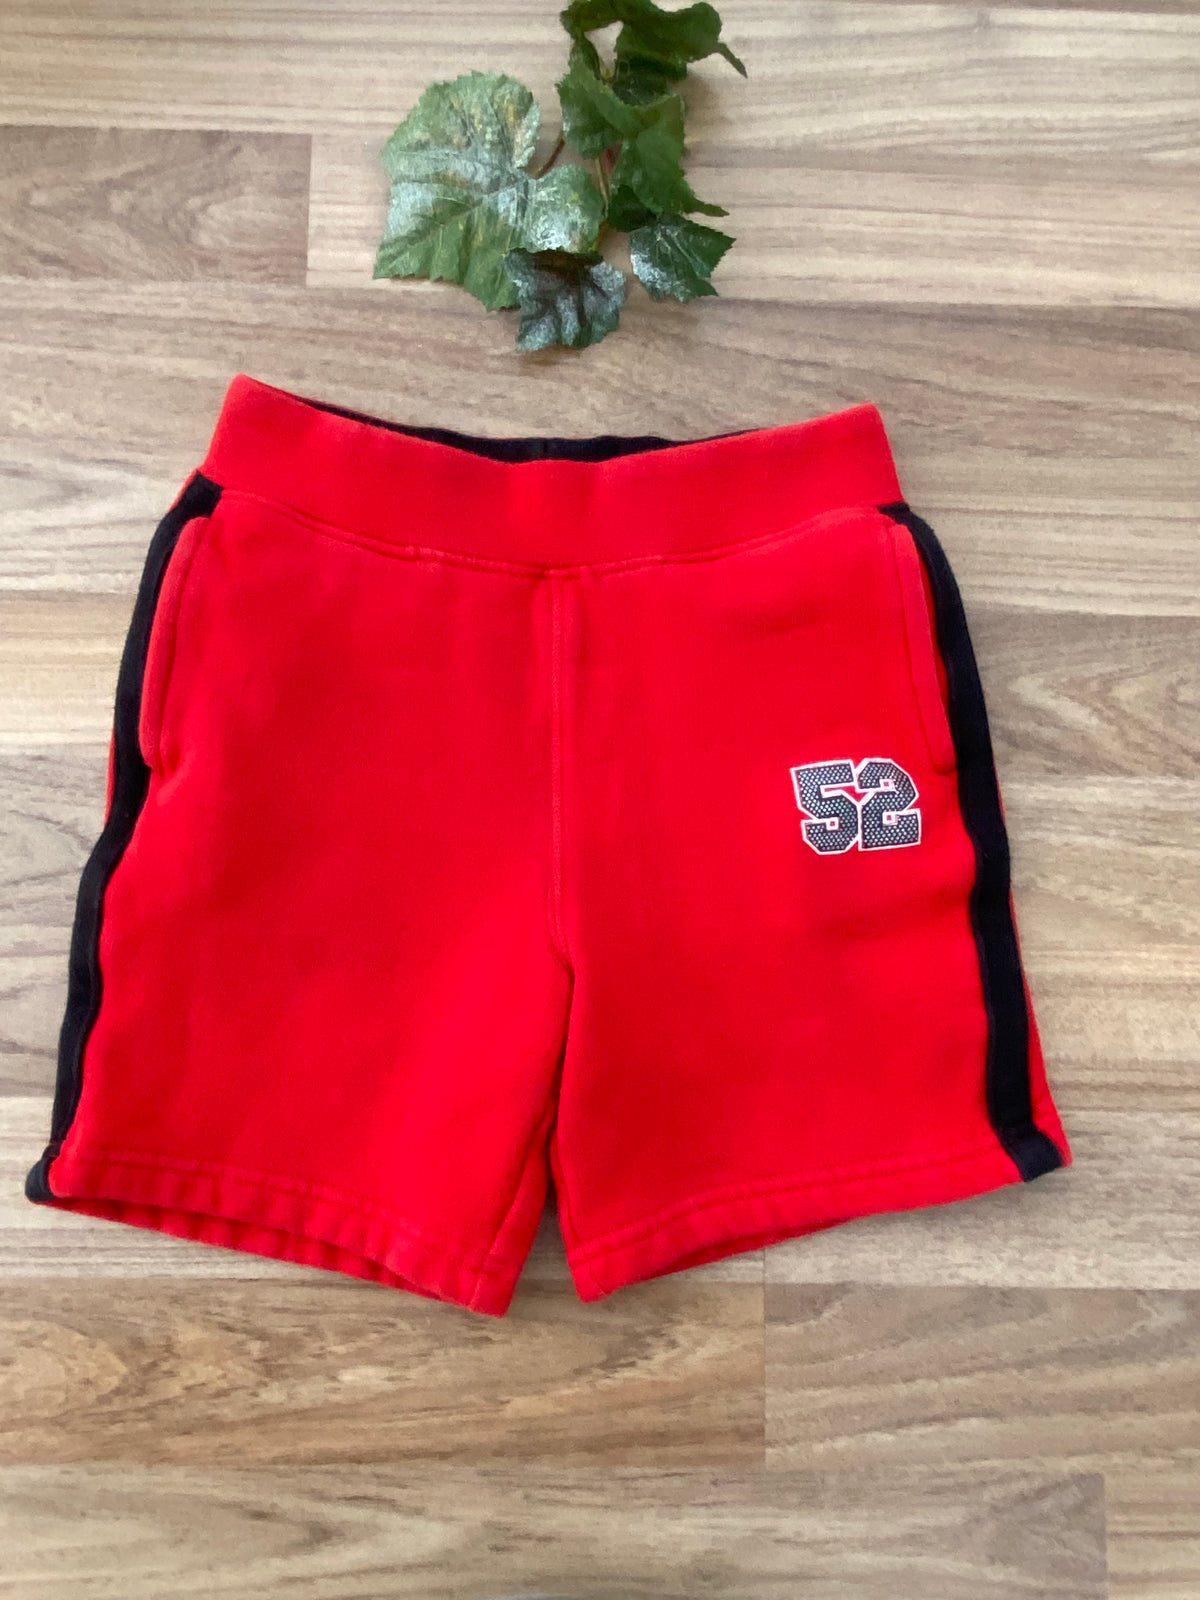 Shorts (Boys Size 3X)